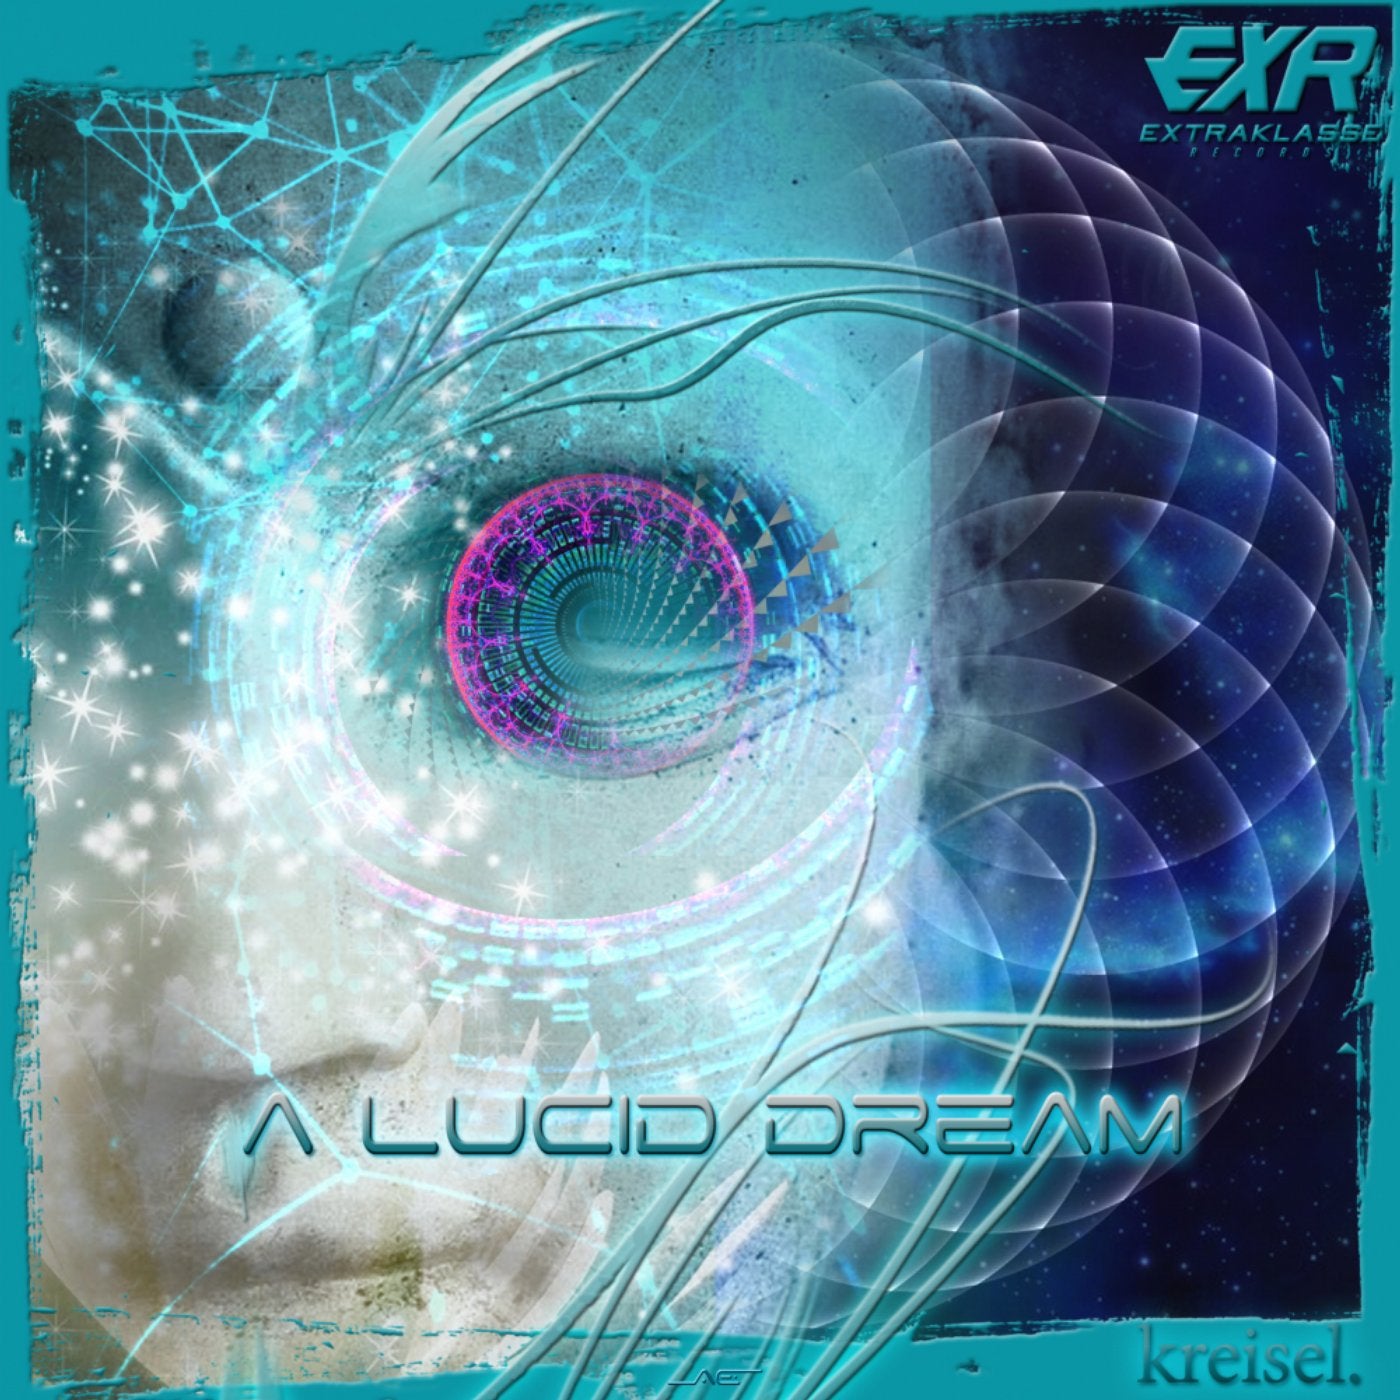 A Lucid Dream